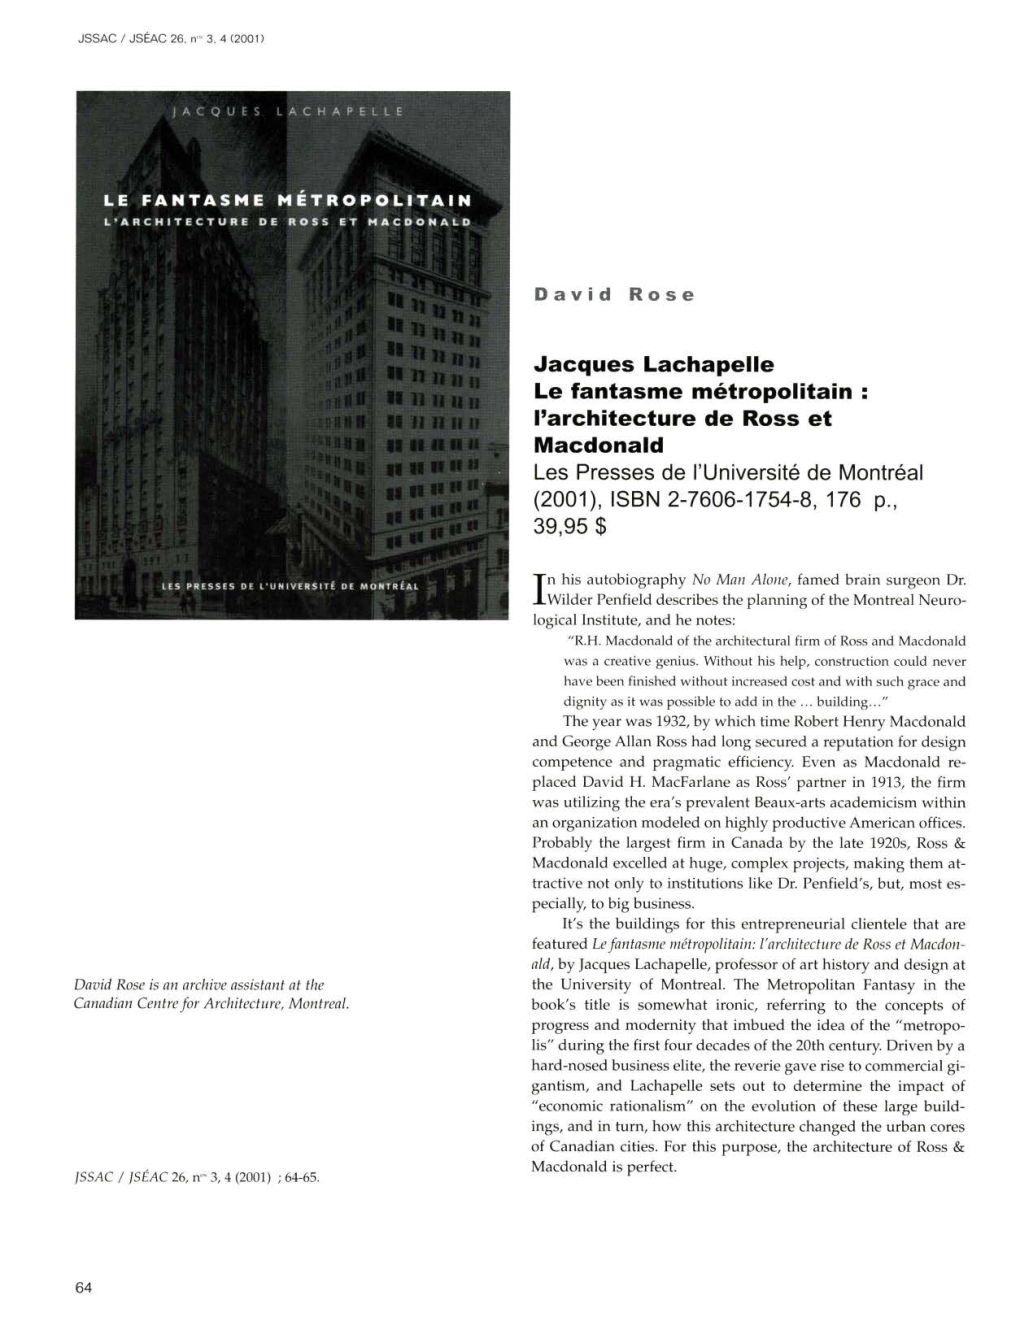 Jacques Lachapelle Le Fantasme Metropolitain : L'architecture De Ross Et Macdonald Les Presses De I'universite De Montreal (2001), ISBN 2-7606-1754-8, 176 P